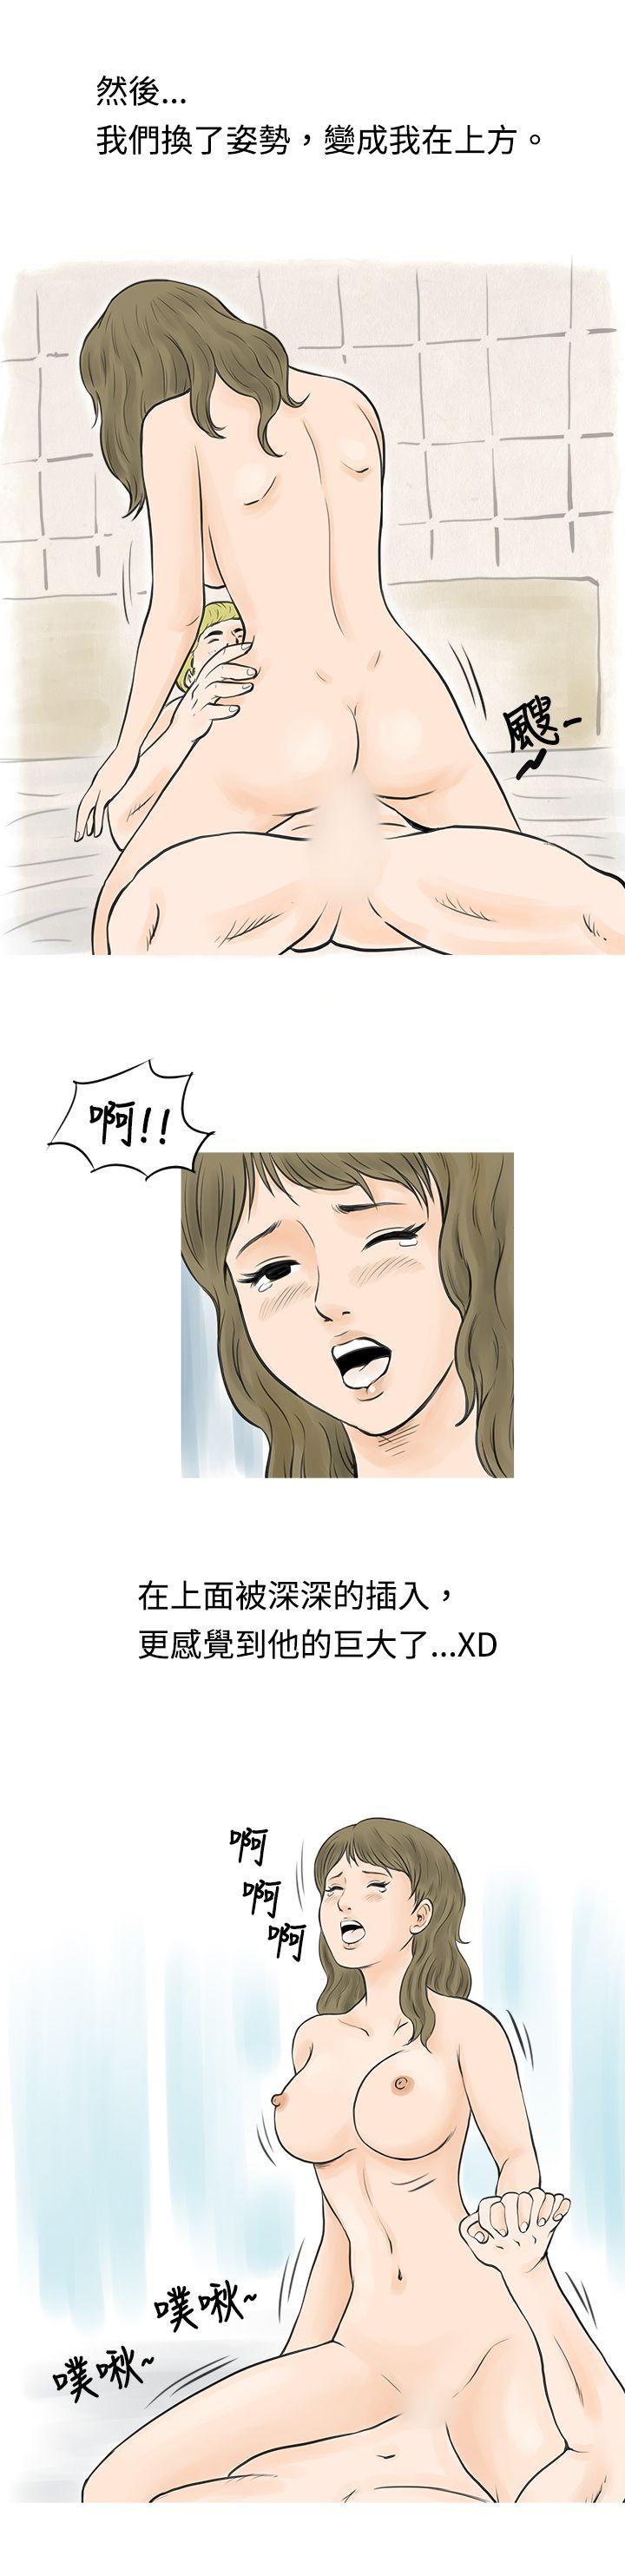 韩国污漫画 秘密Story 在梨泰院游泳池中的小故事(下) 11